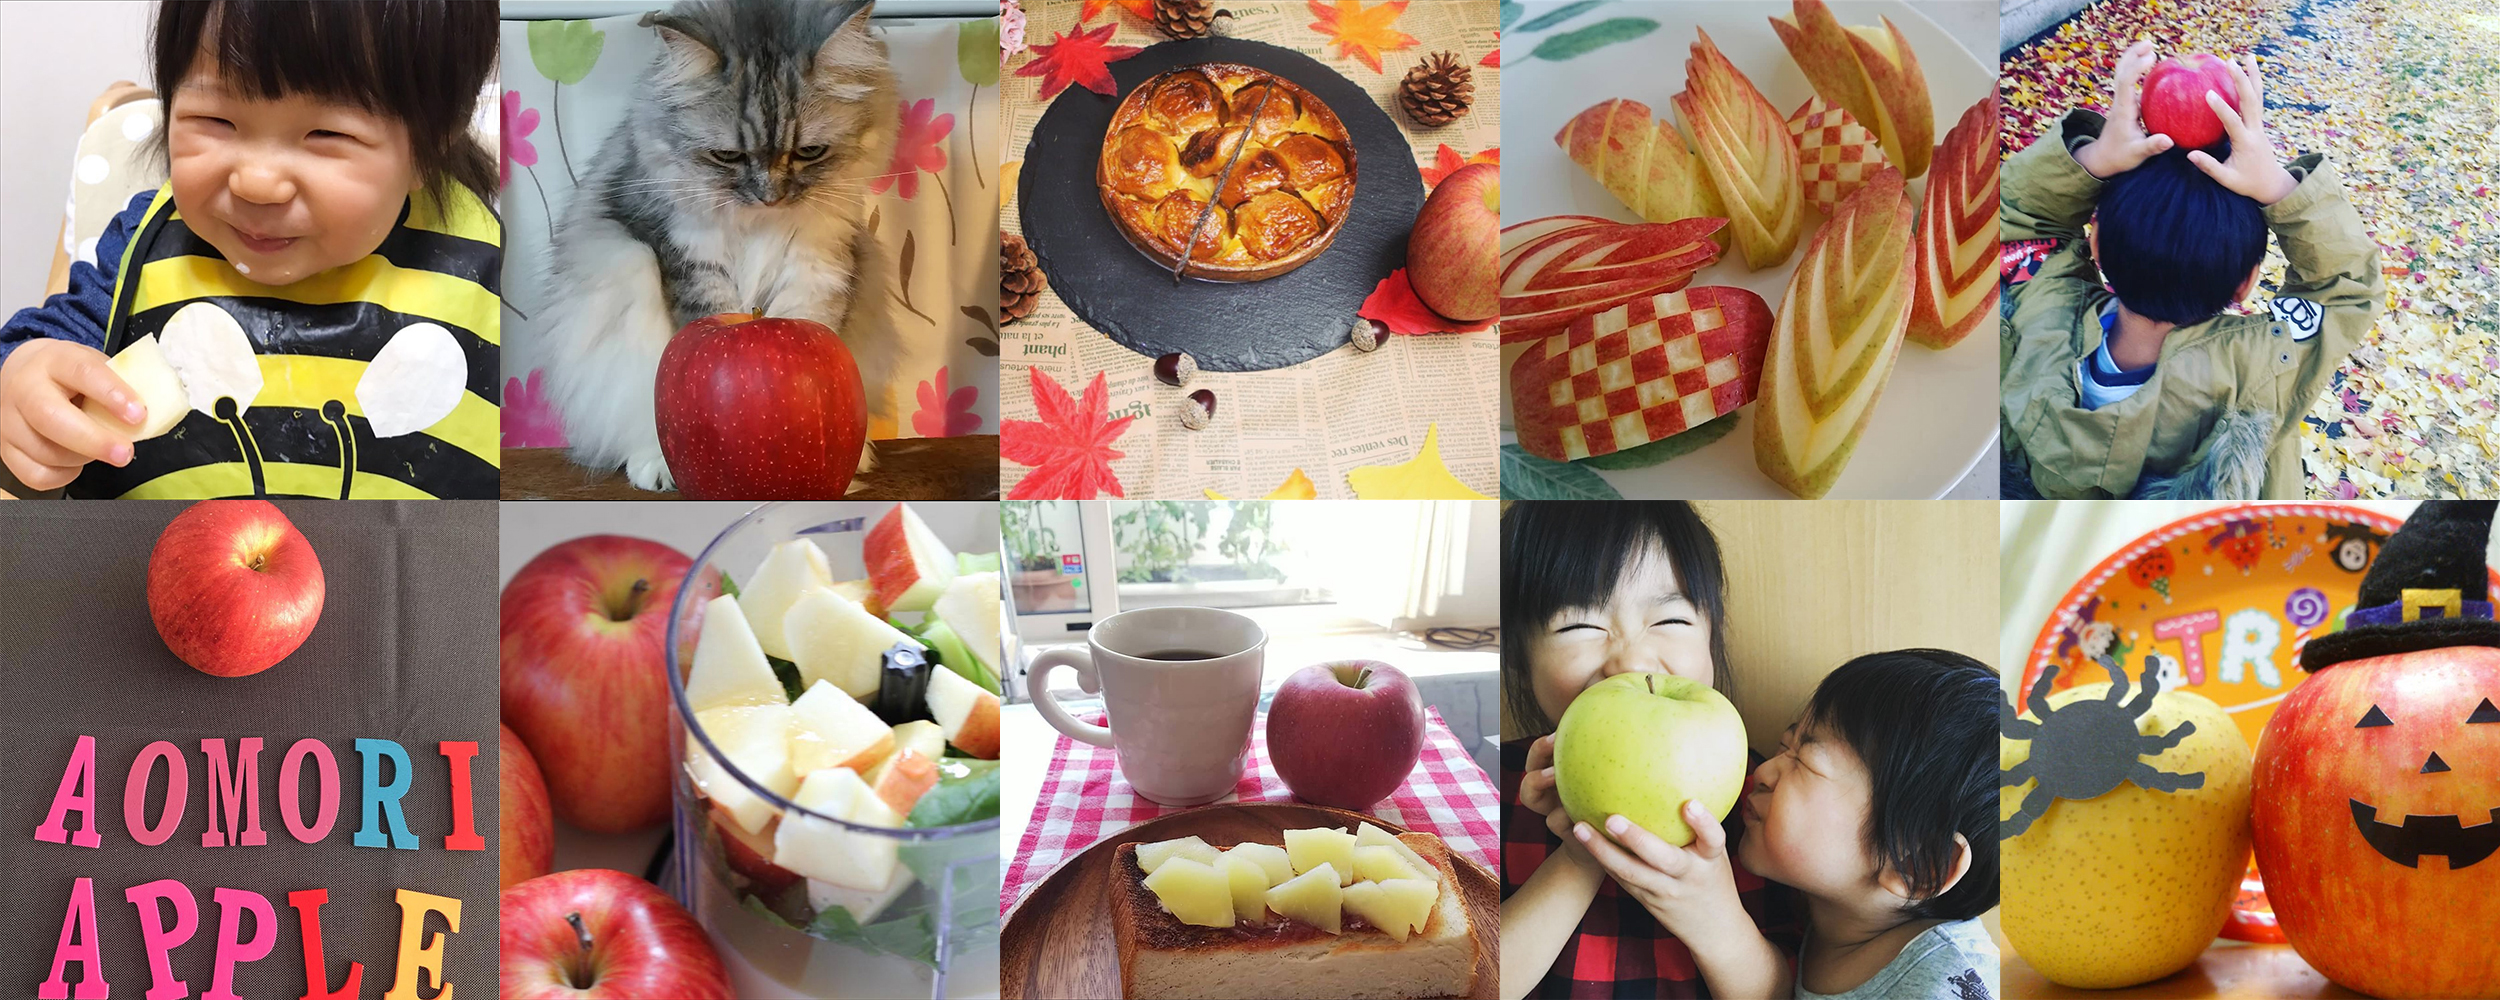 私の美活は食べるだけ青森りんごキャンペーン10月結果